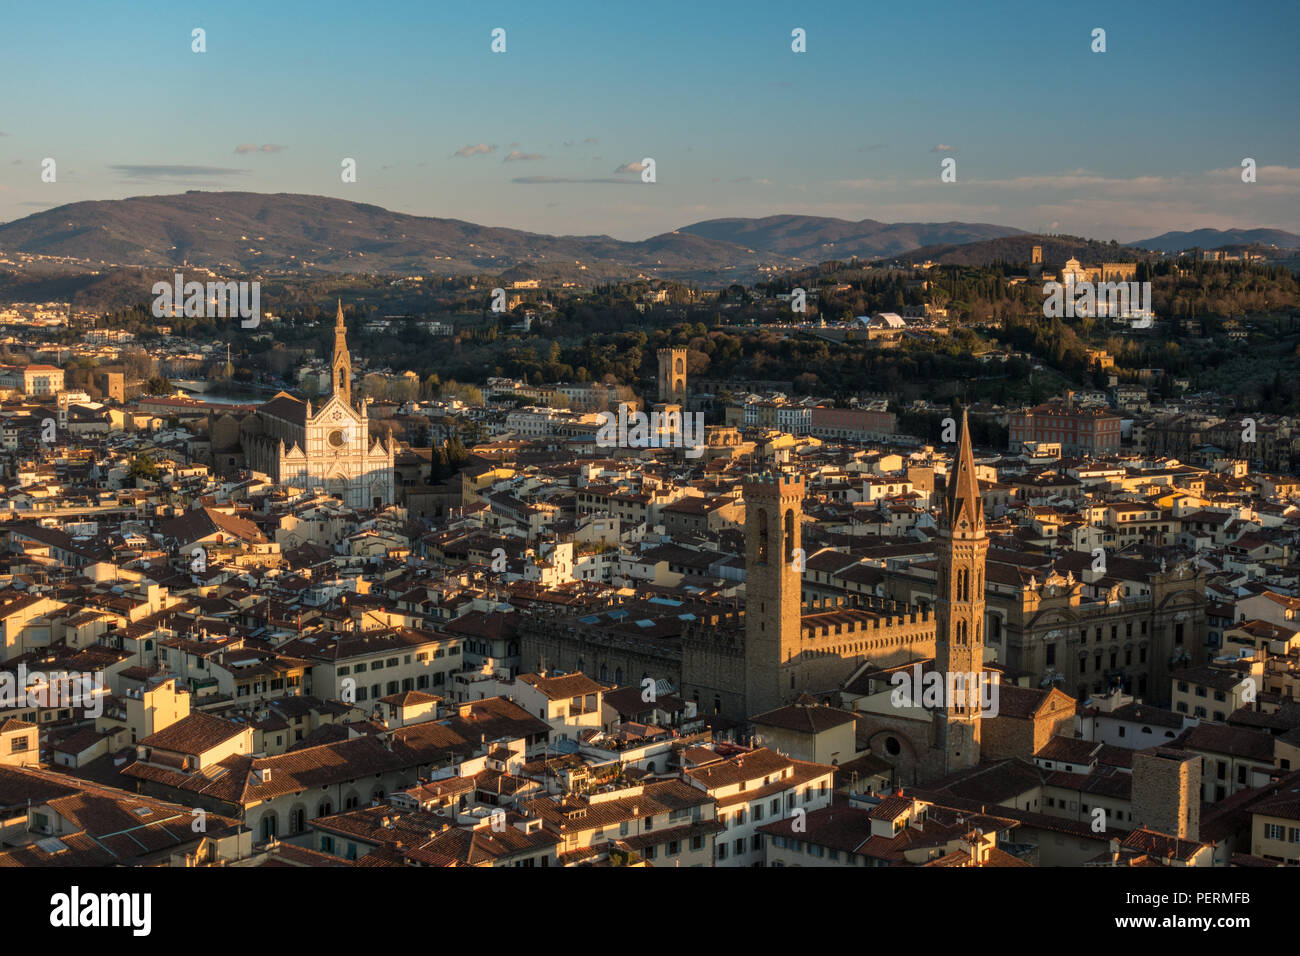 Firenze, Italia - 23 Marzo 2018: la luce della sera illumina il paesaggio urbano di Firenze, tra cui la Torre del Bargello e la Basilica di Santa Croce Foto Stock